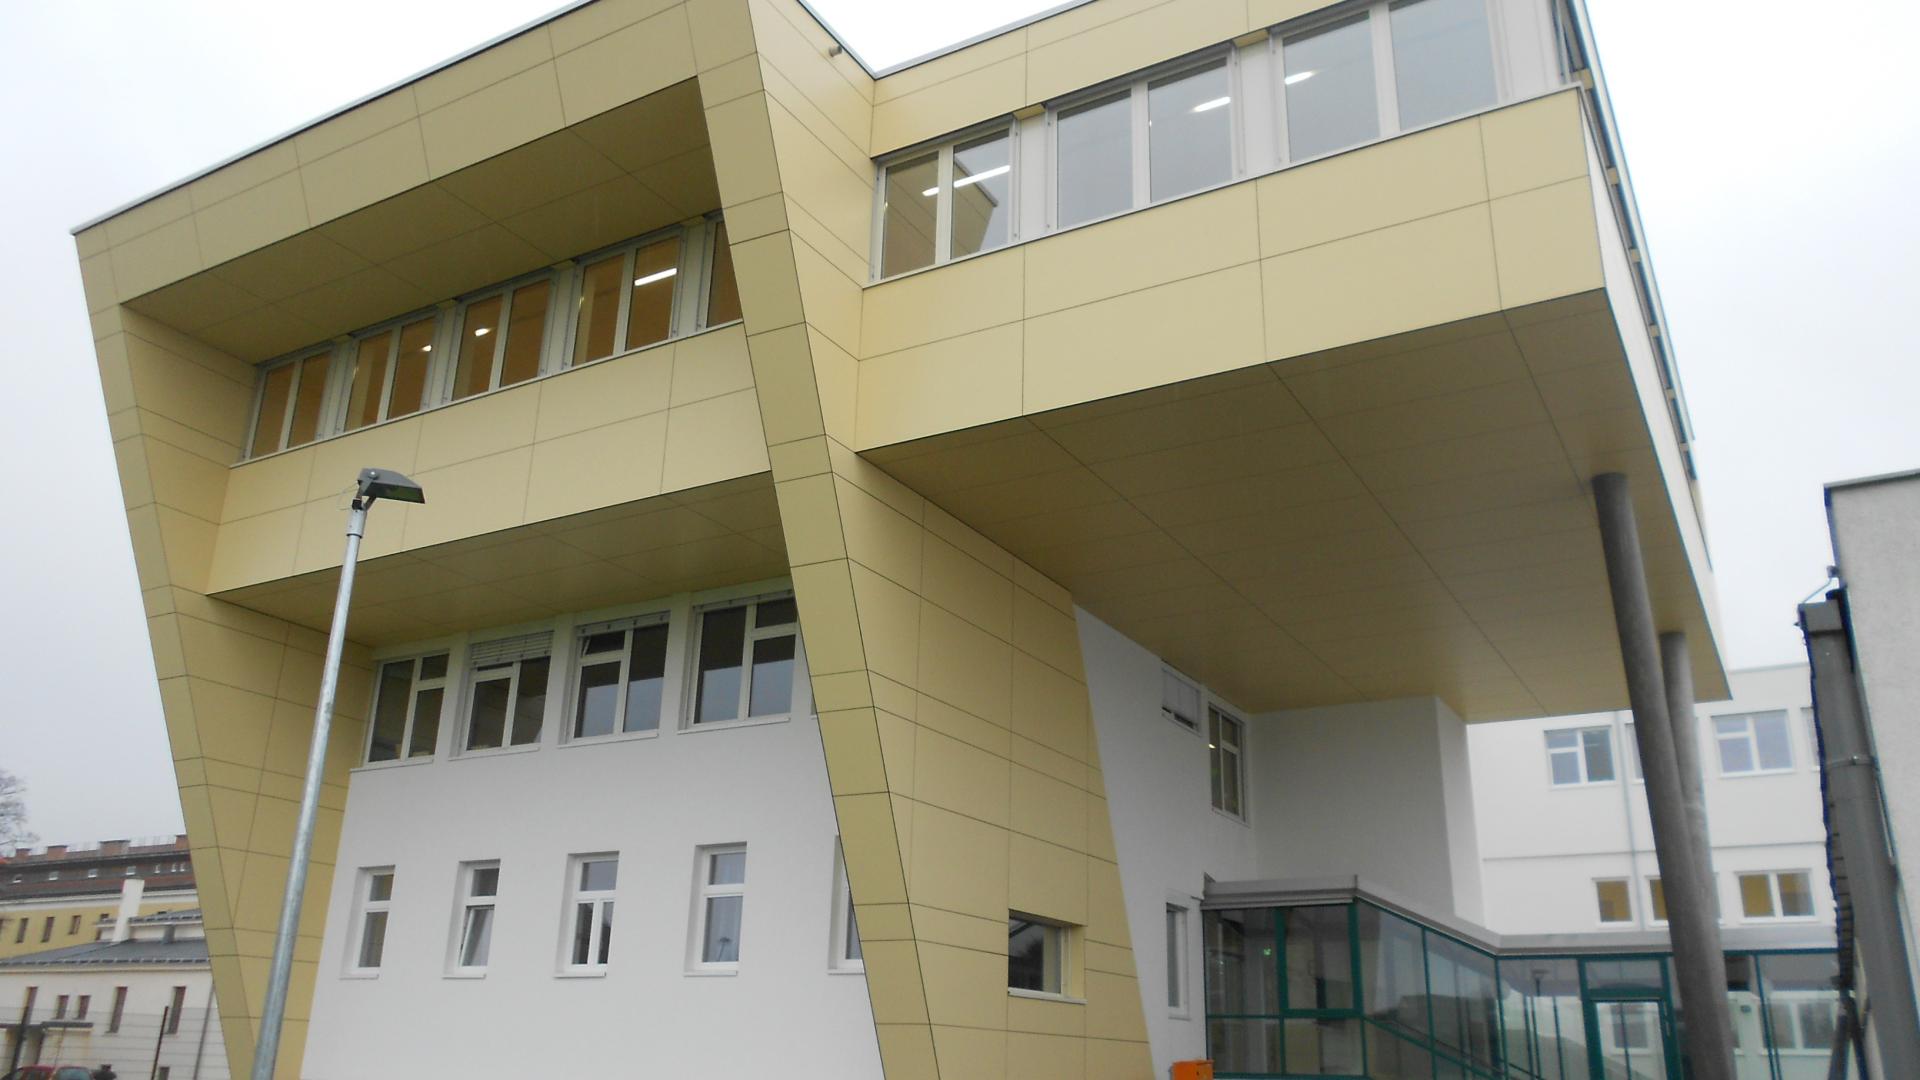 Neuerrichtung Polytechnische Schule und Um- und Zubauten Hauptschule Bruck an der Leitha